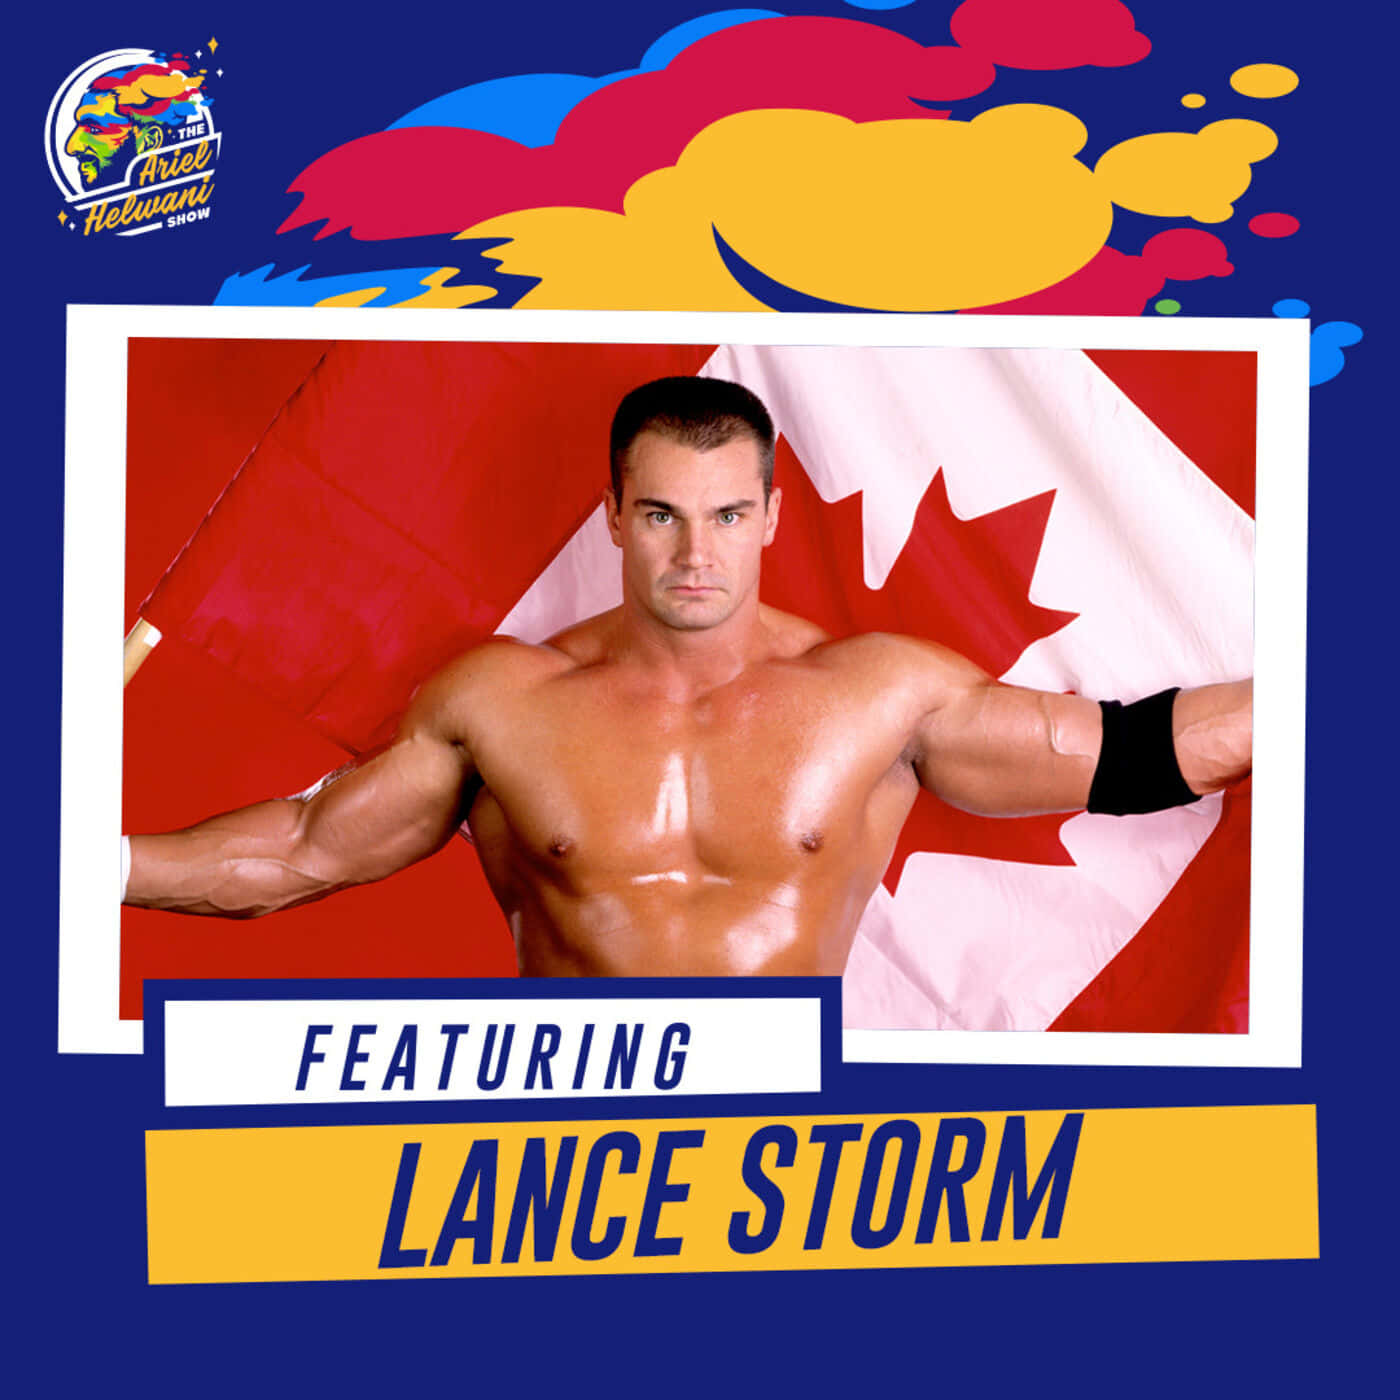 Canadian Wrestler Lance Storm Colorful Digital Poster Wallpaper